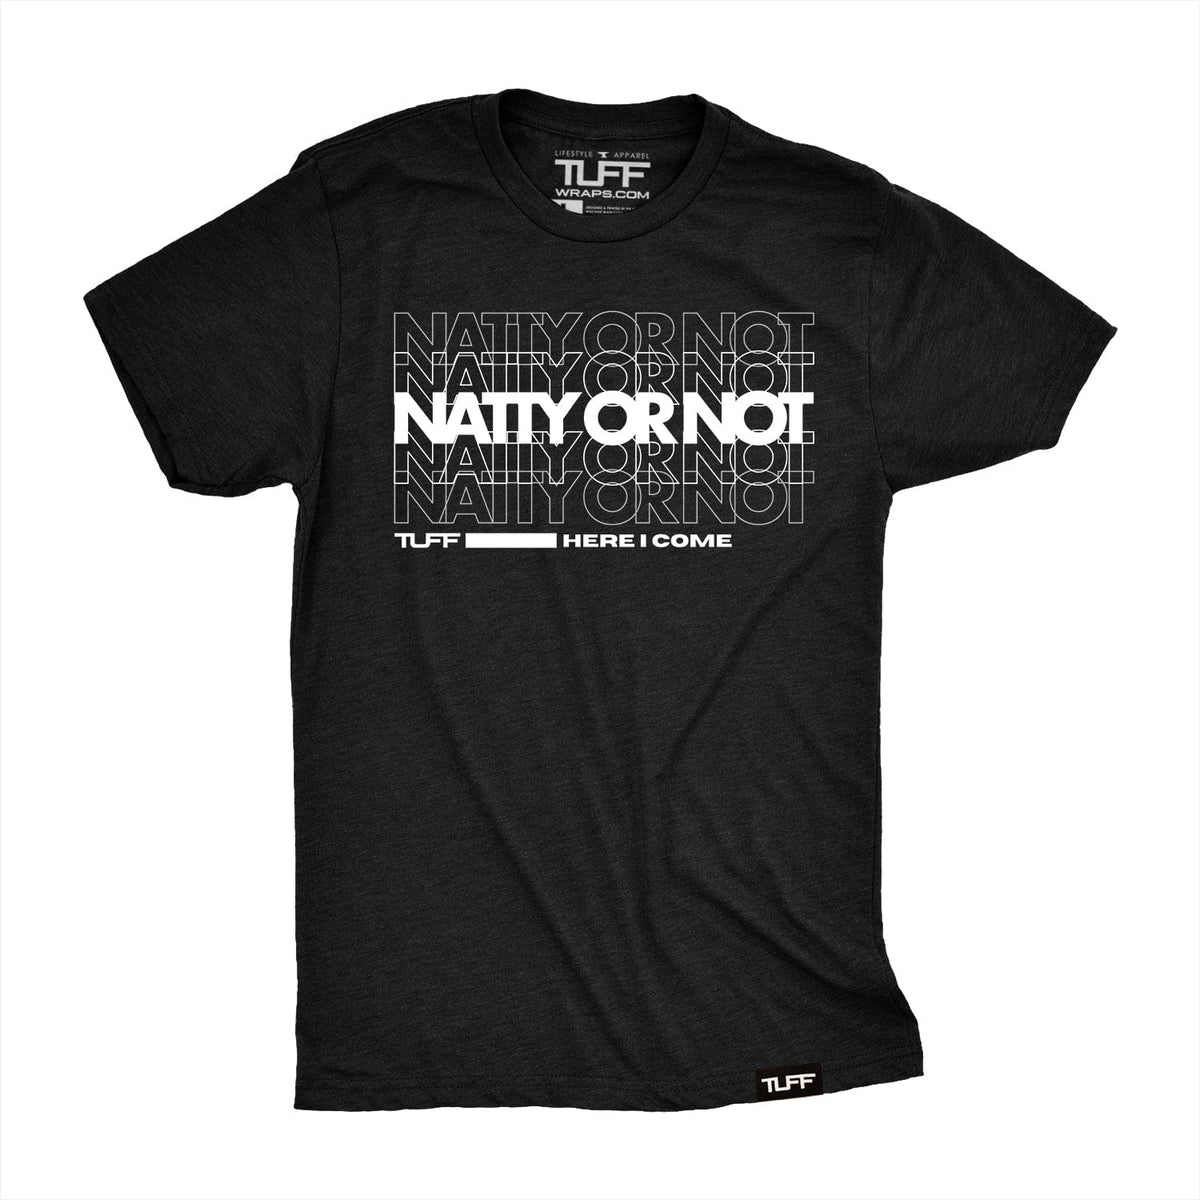 Natty Or Not Tee T-shirt